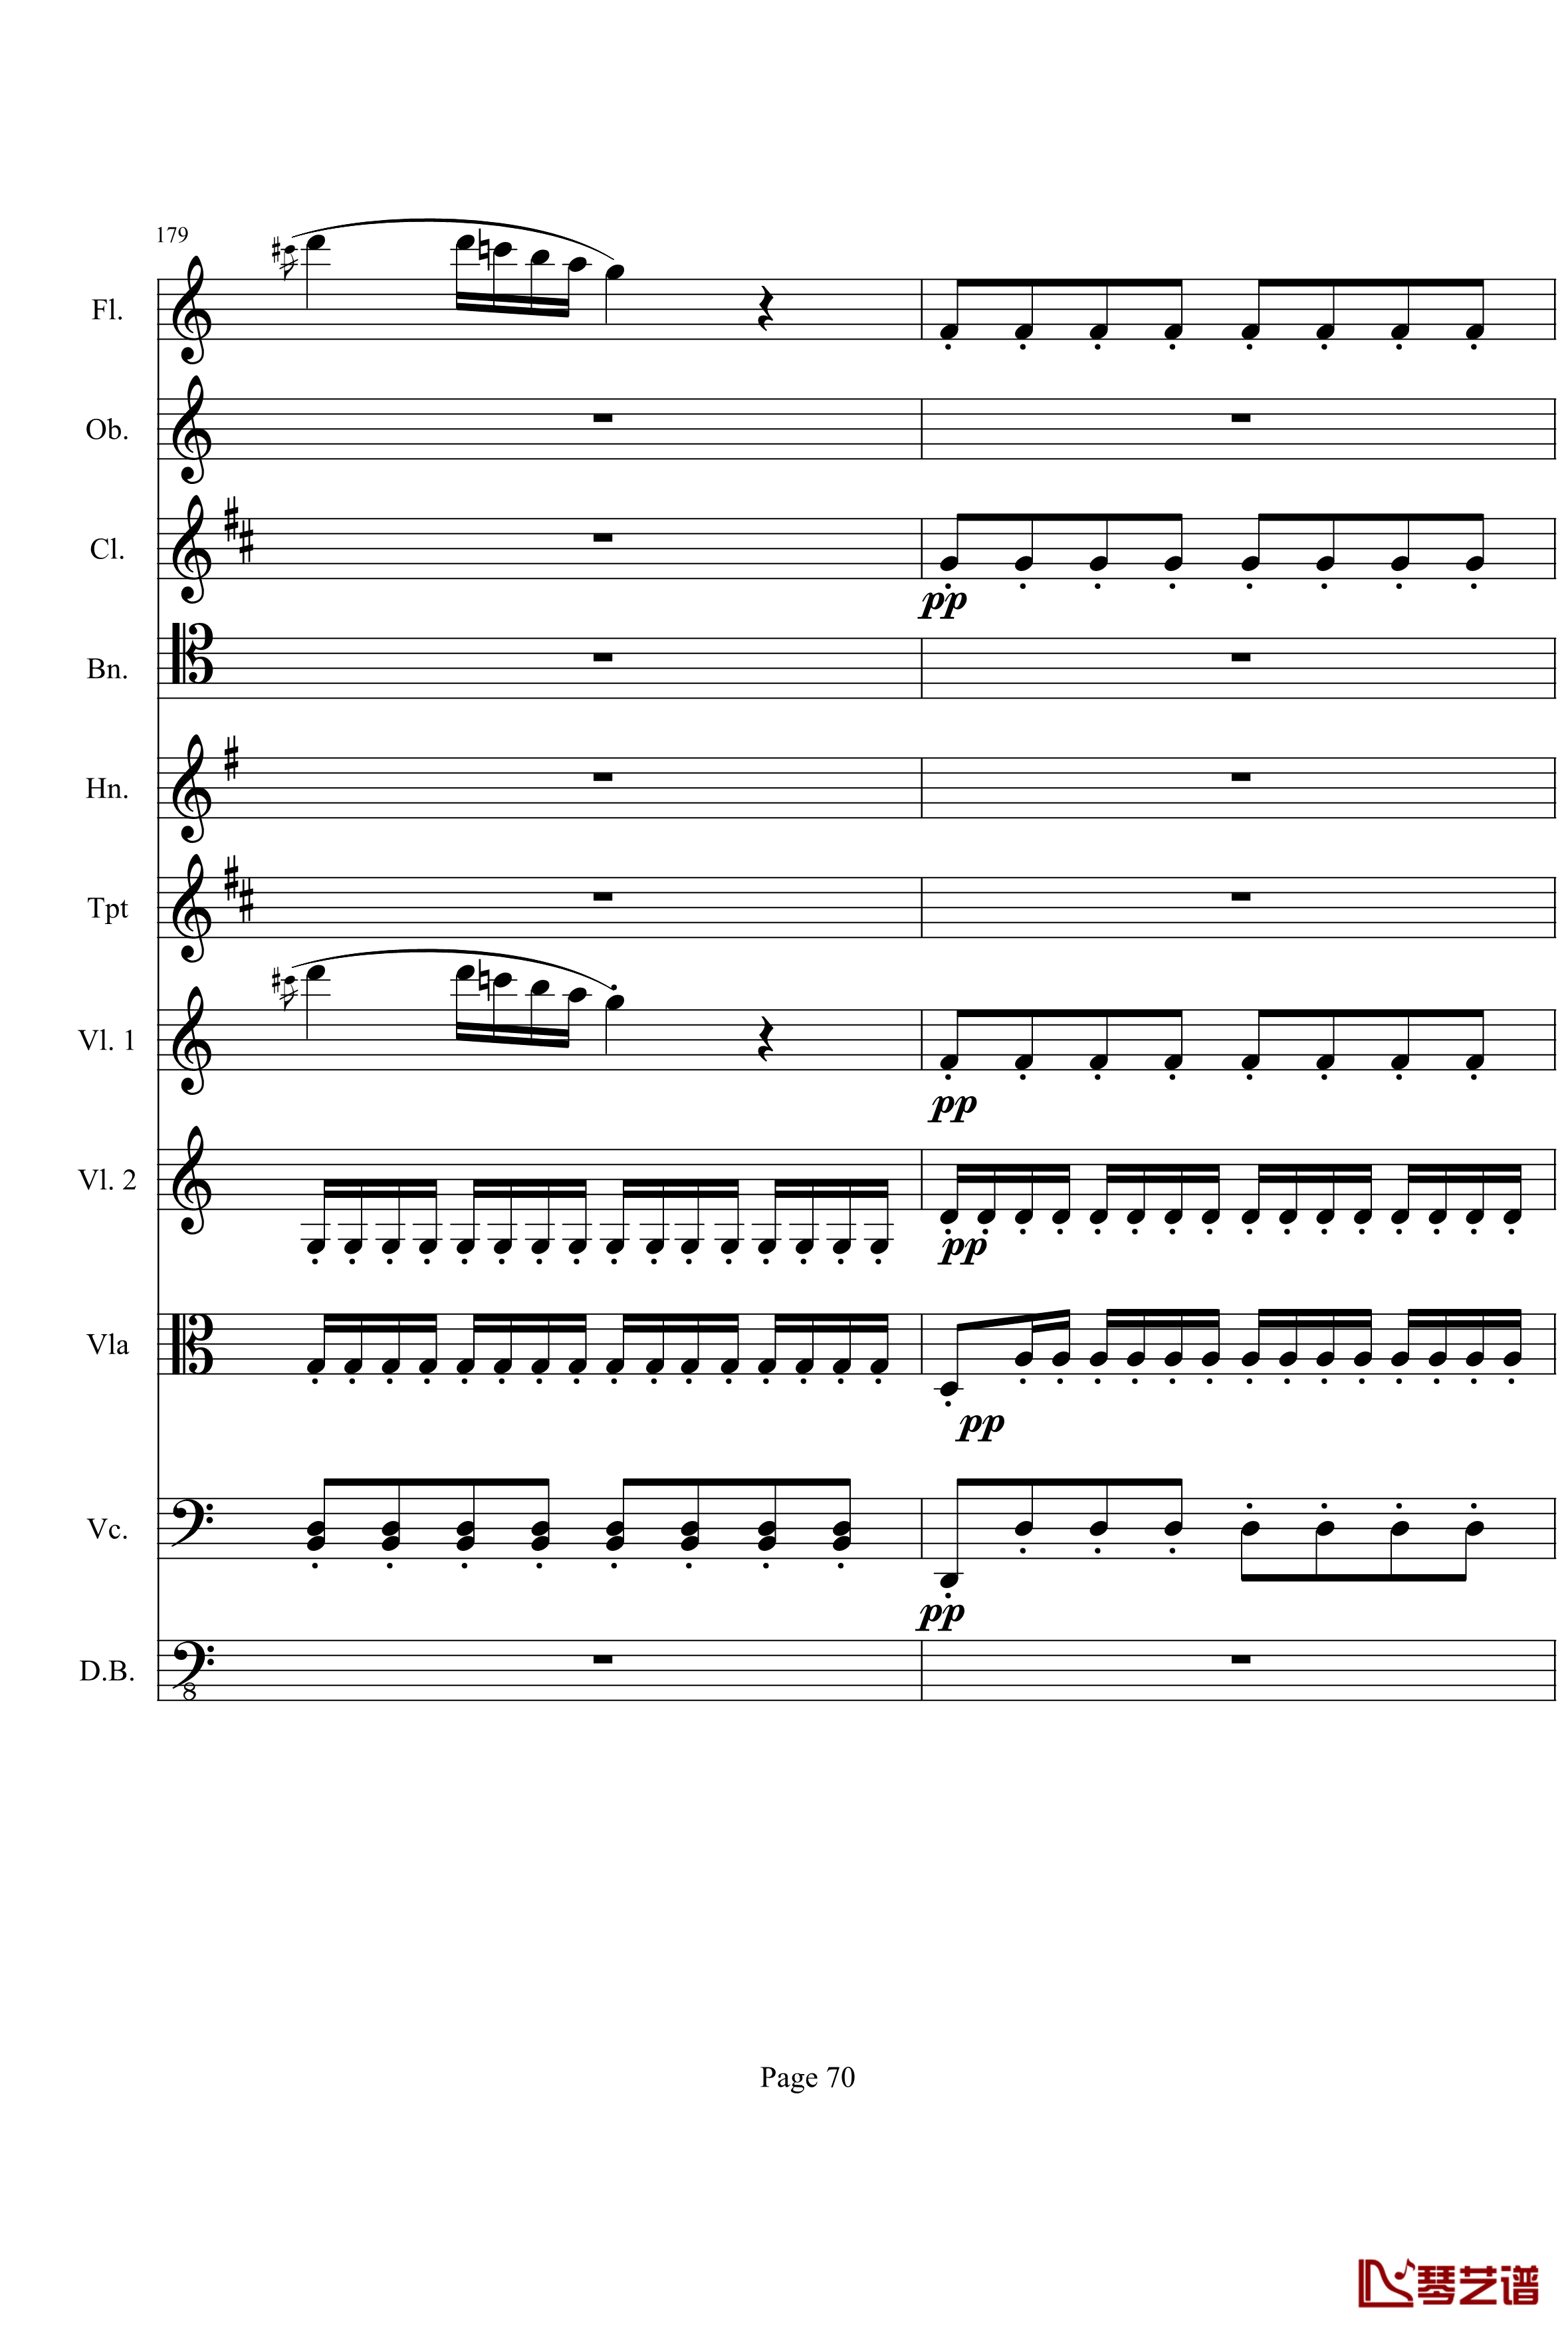 奏鸣曲之交响钢琴谱-第21首-Ⅰ-贝多芬-beethoven70